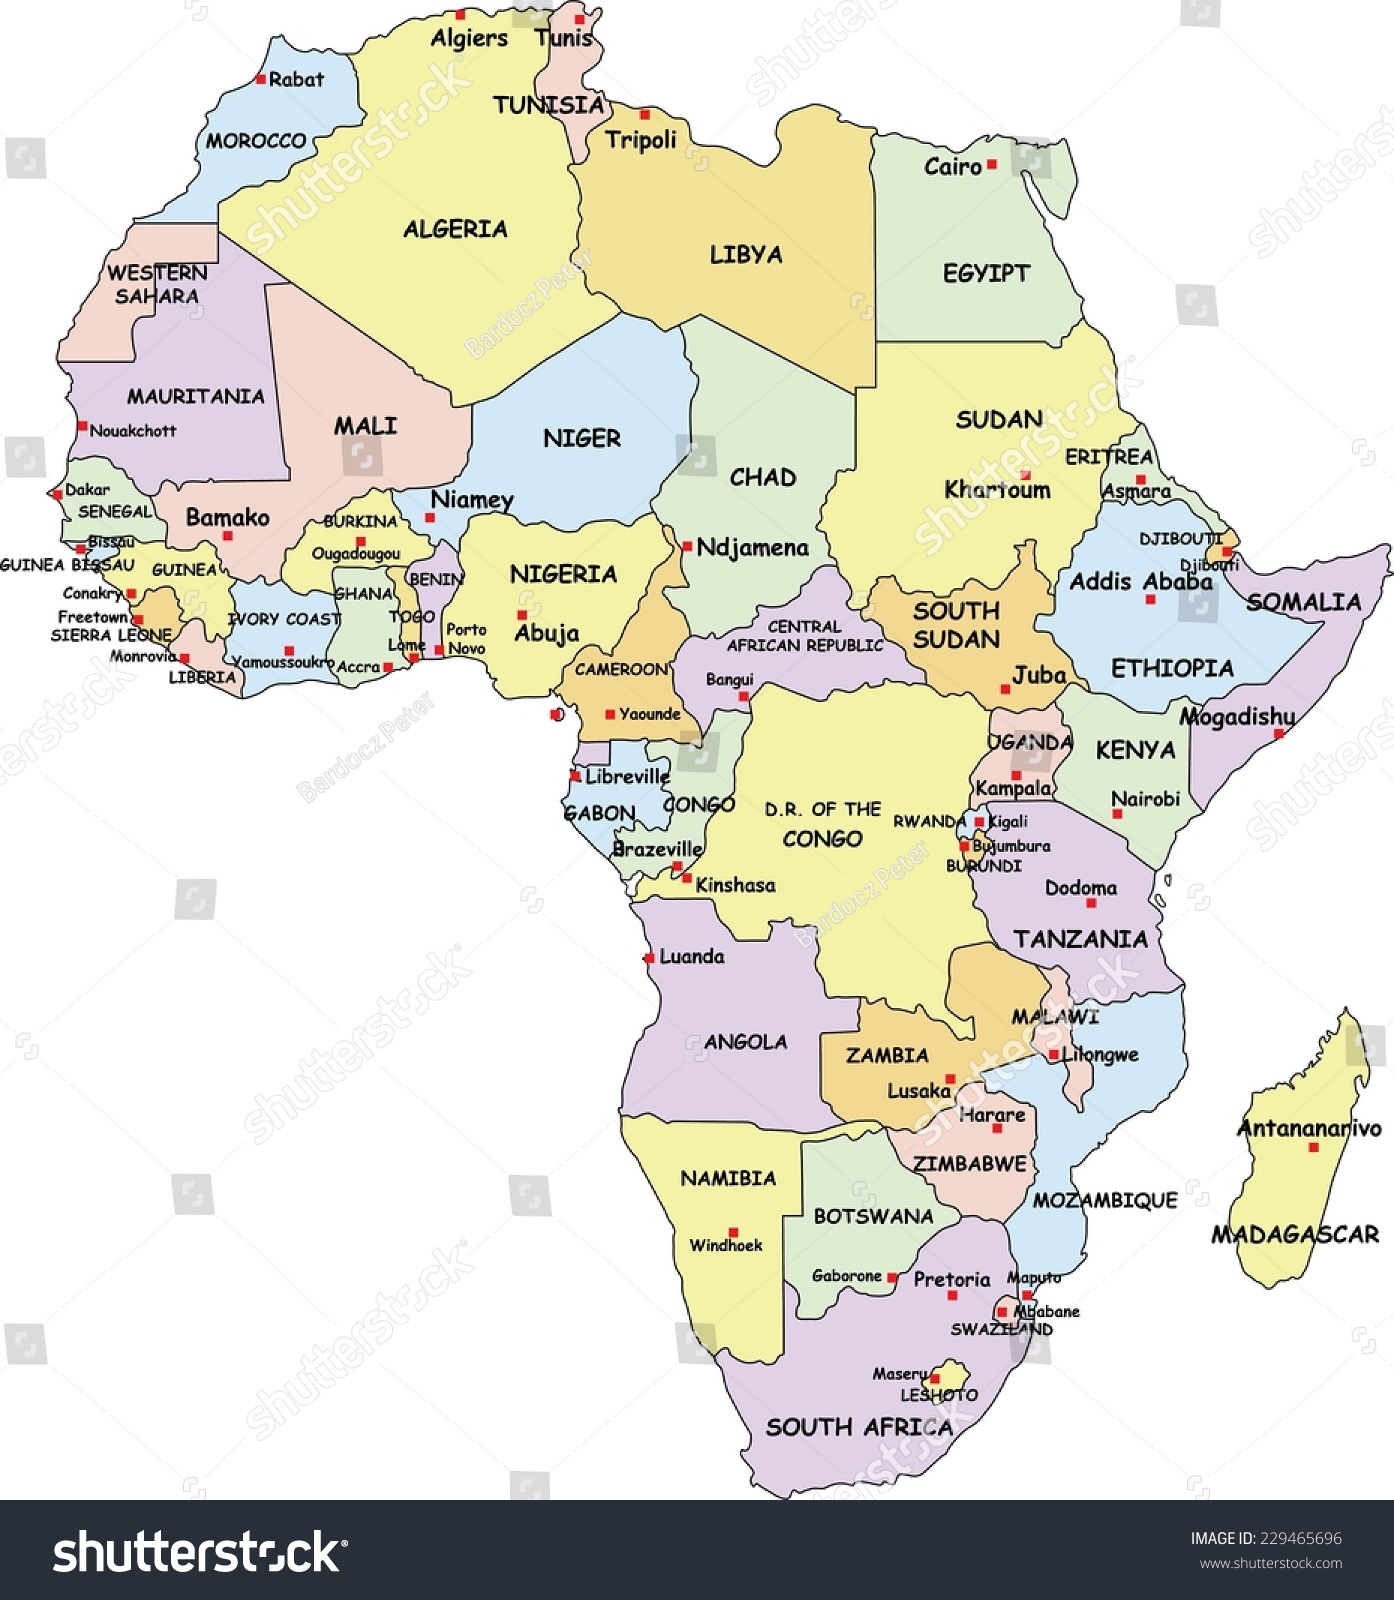 高度详细的非洲政治地图的国家和首都的名字。-背景\/素材,教育-海洛创意(HelloRF)-Shutterstock中国独家合作伙伴-正版图片在线交易平台-站酷旗下品牌